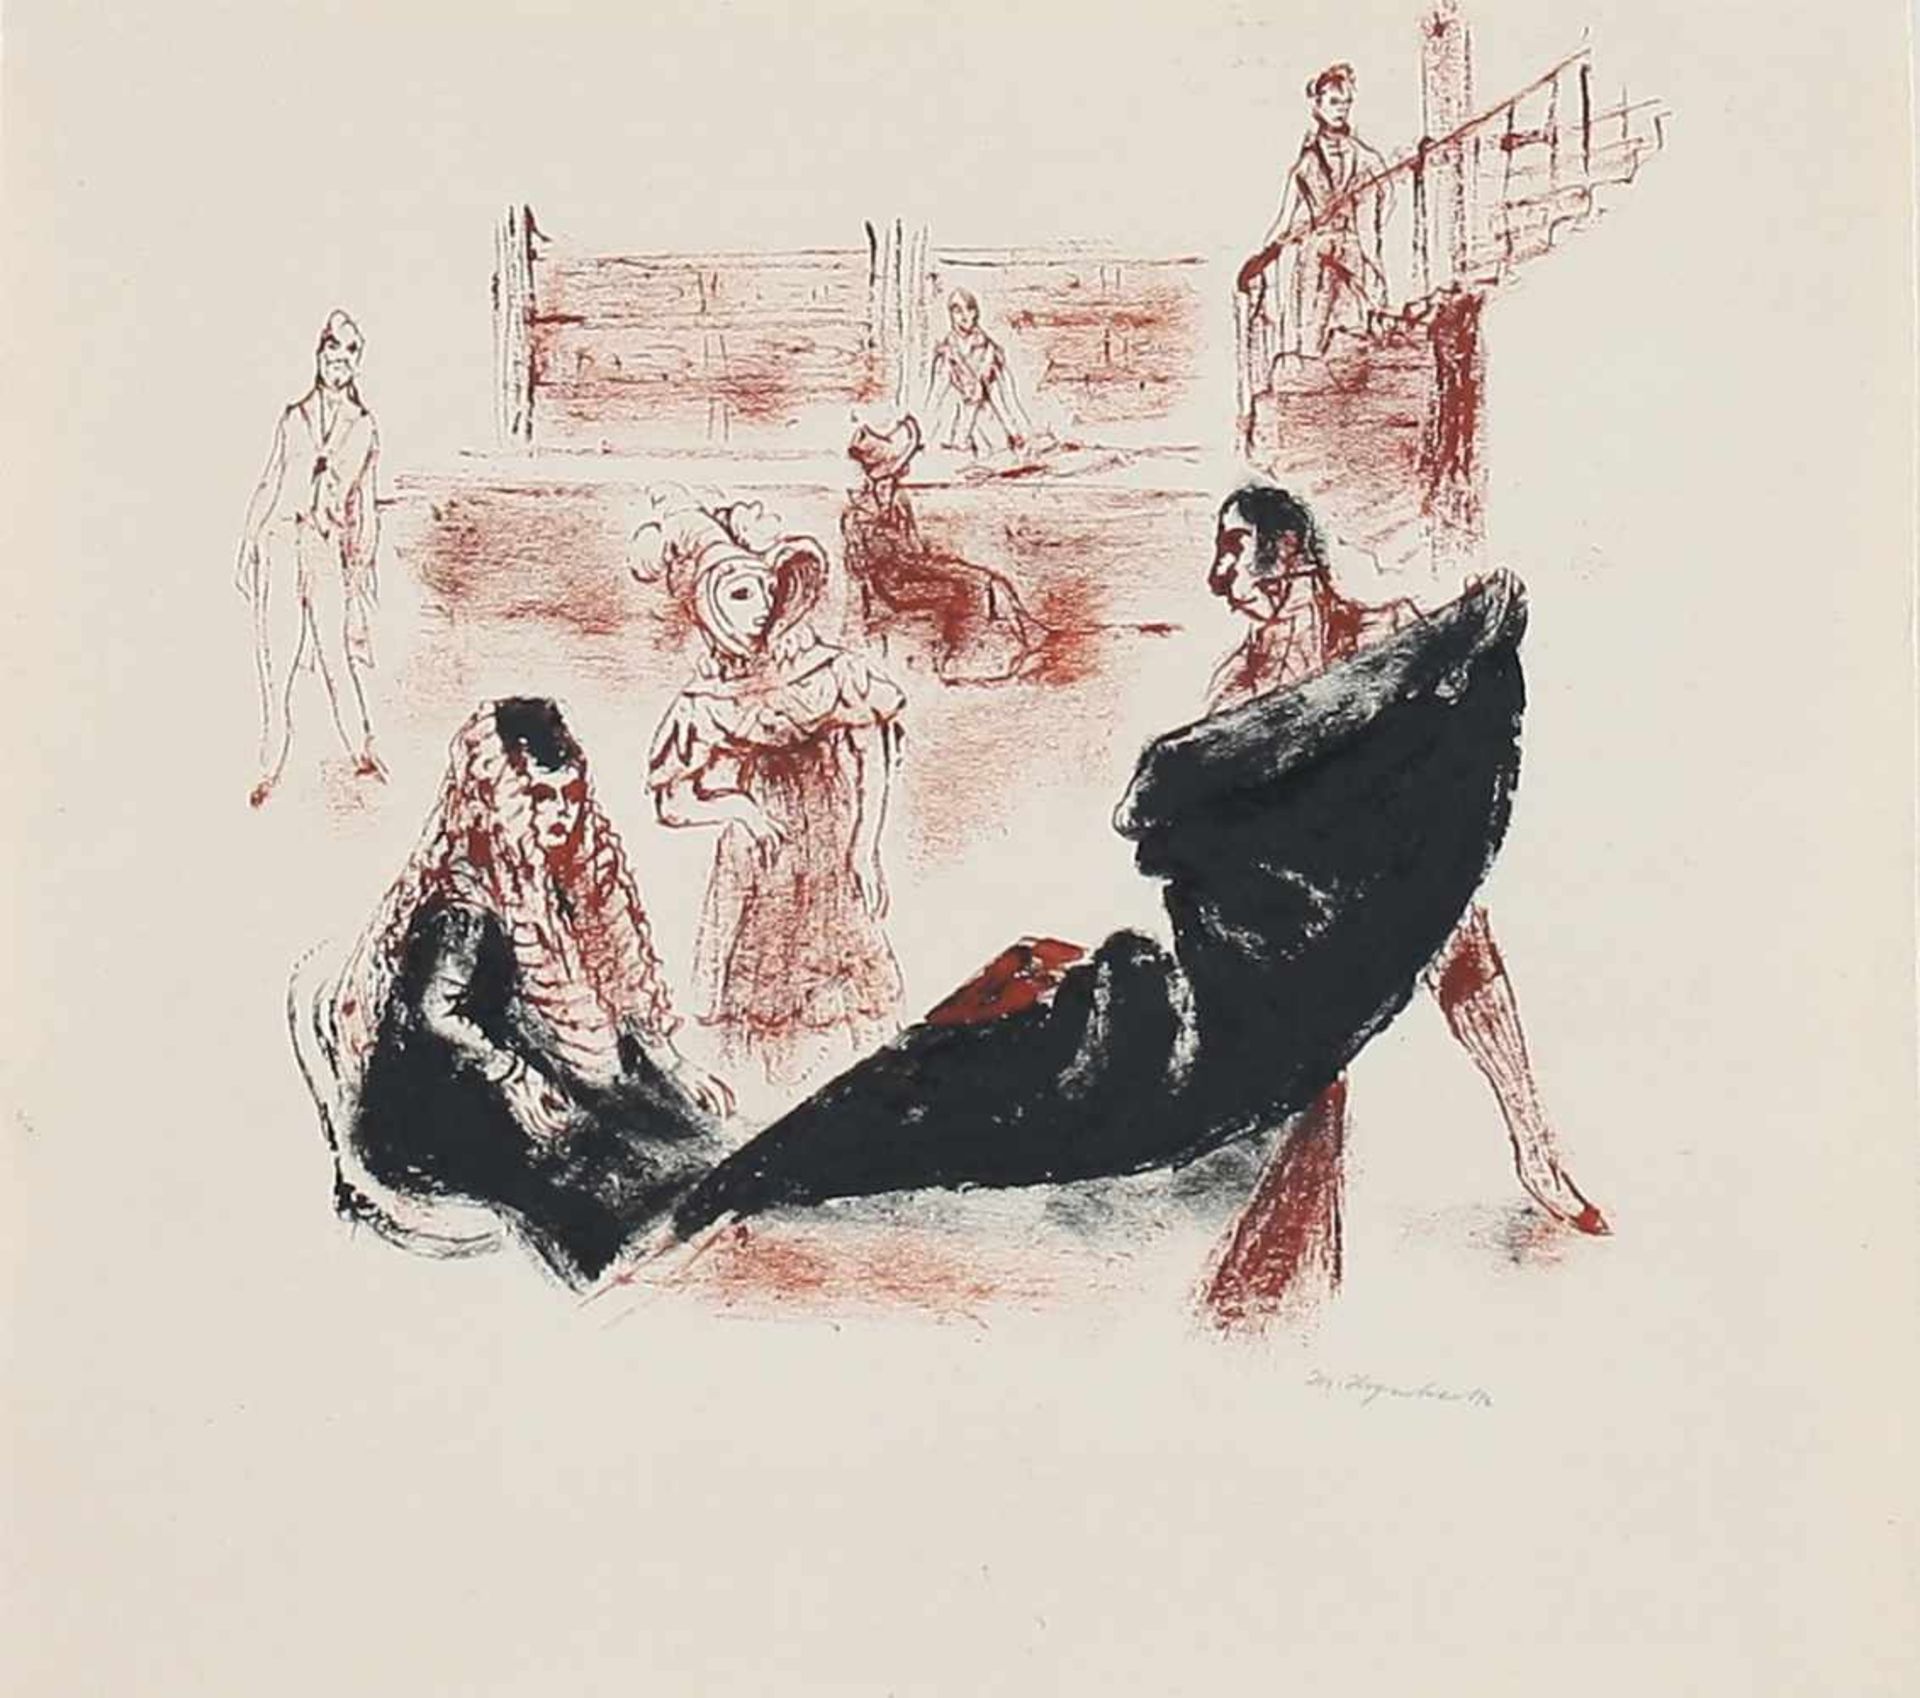 Hegenbarth, Josef Farbige Pinselzeichnung/ Papier. Illustration zu "Beichte auf Zimmer 13" von Eça